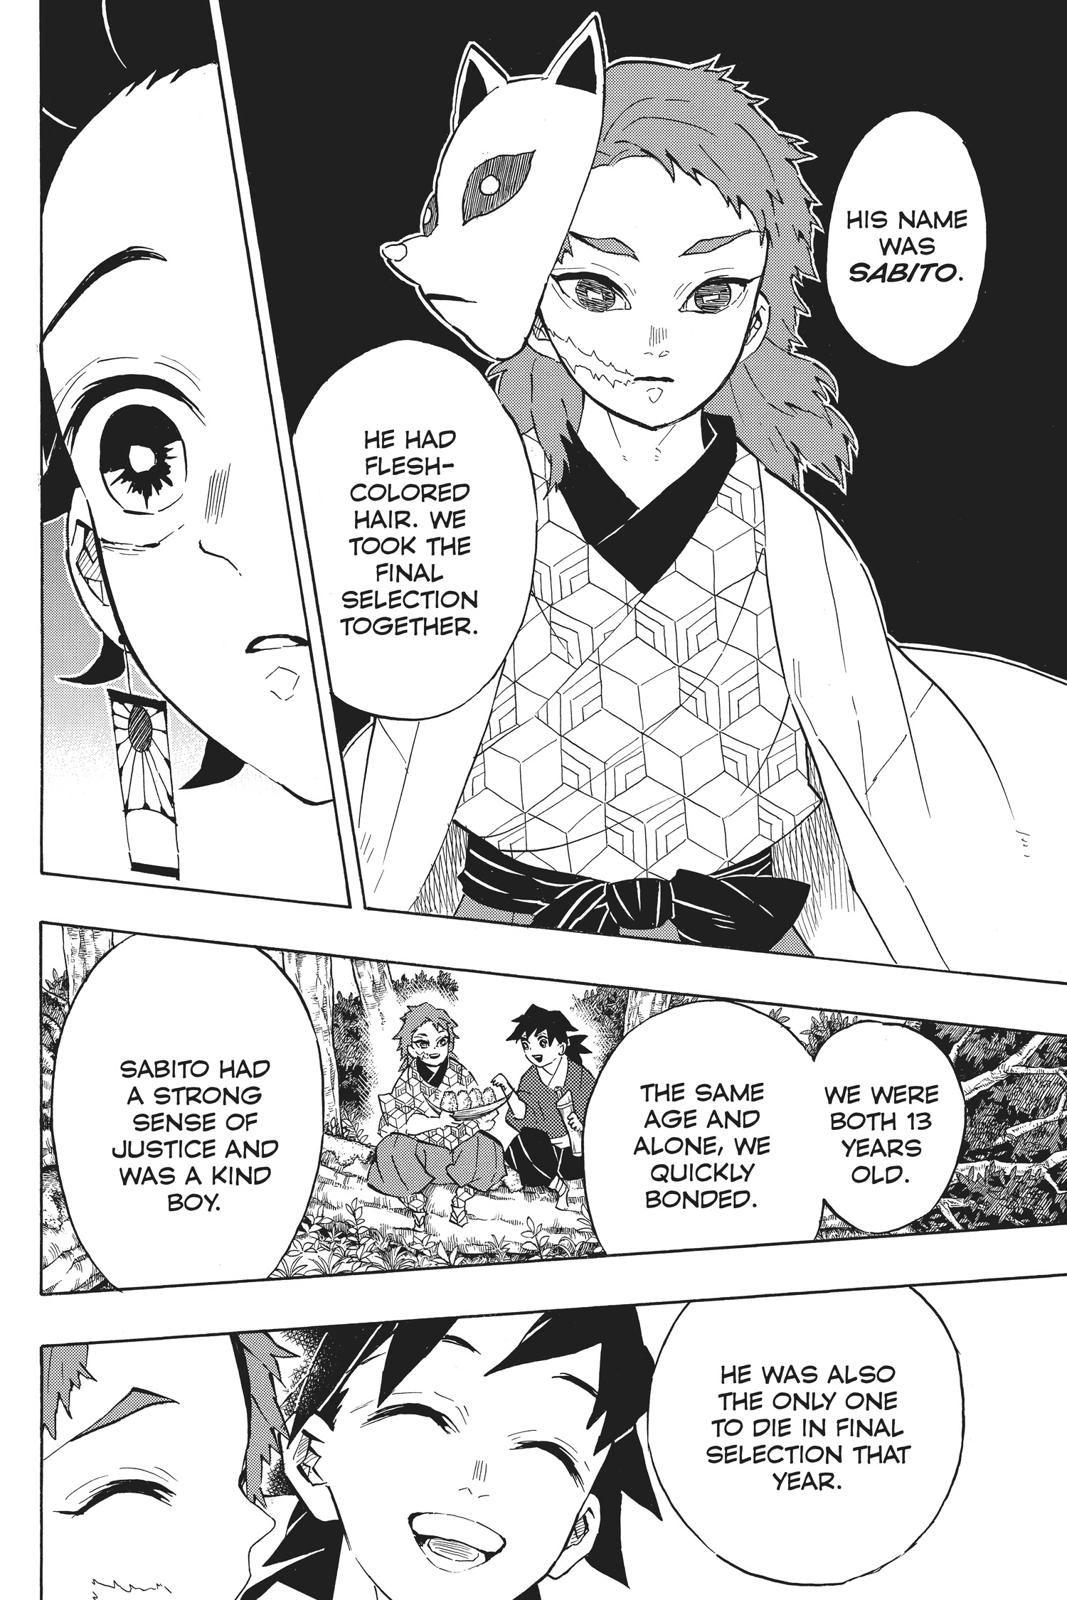 Demon Slayer Manga Manga Chapter - 130 - image 14